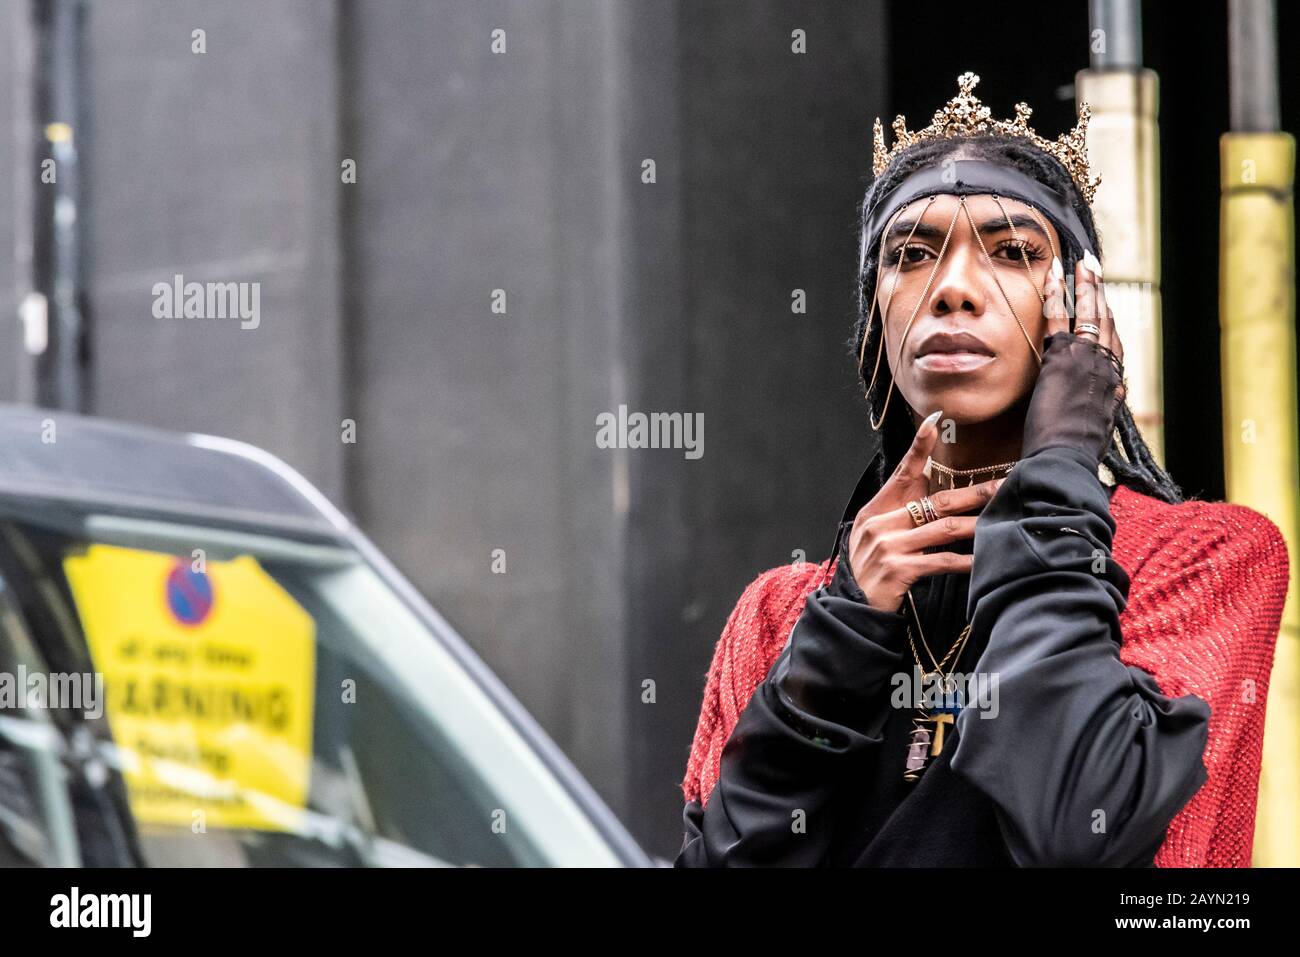 Un homme fashionista se posant dans le Strand à l'extérieur Du magasin pendant la London Fashion week 2020. Personne de couleur. Mâle noir avec couronne et clous longs Banque D'Images